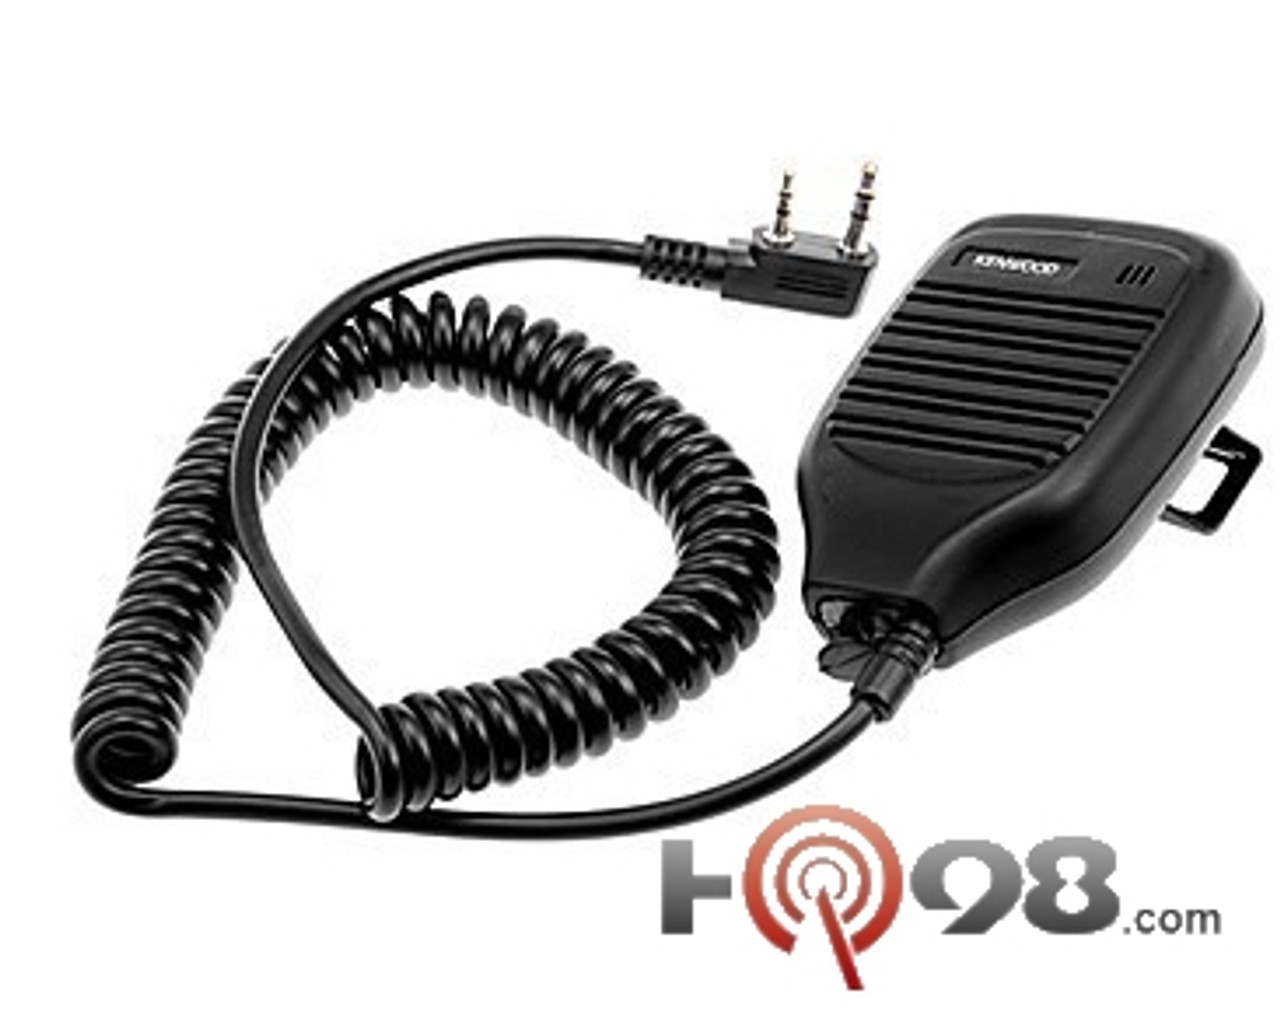 Kenwood ProTalk KMC21 Speaker Microphone for TK series radios business